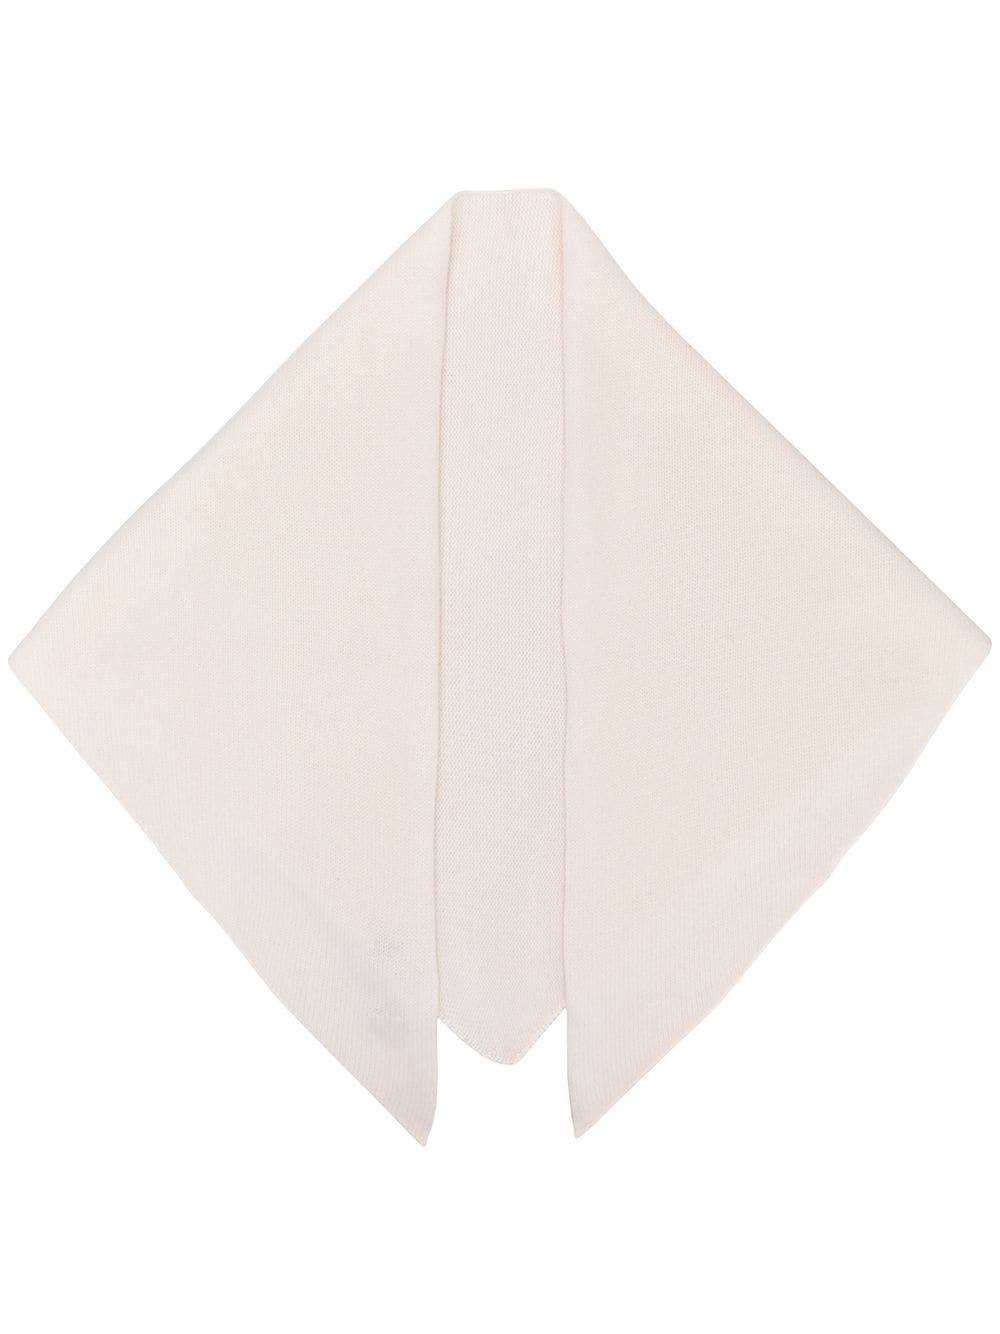 Cashmere In Love Bea Triangle Scarf In White